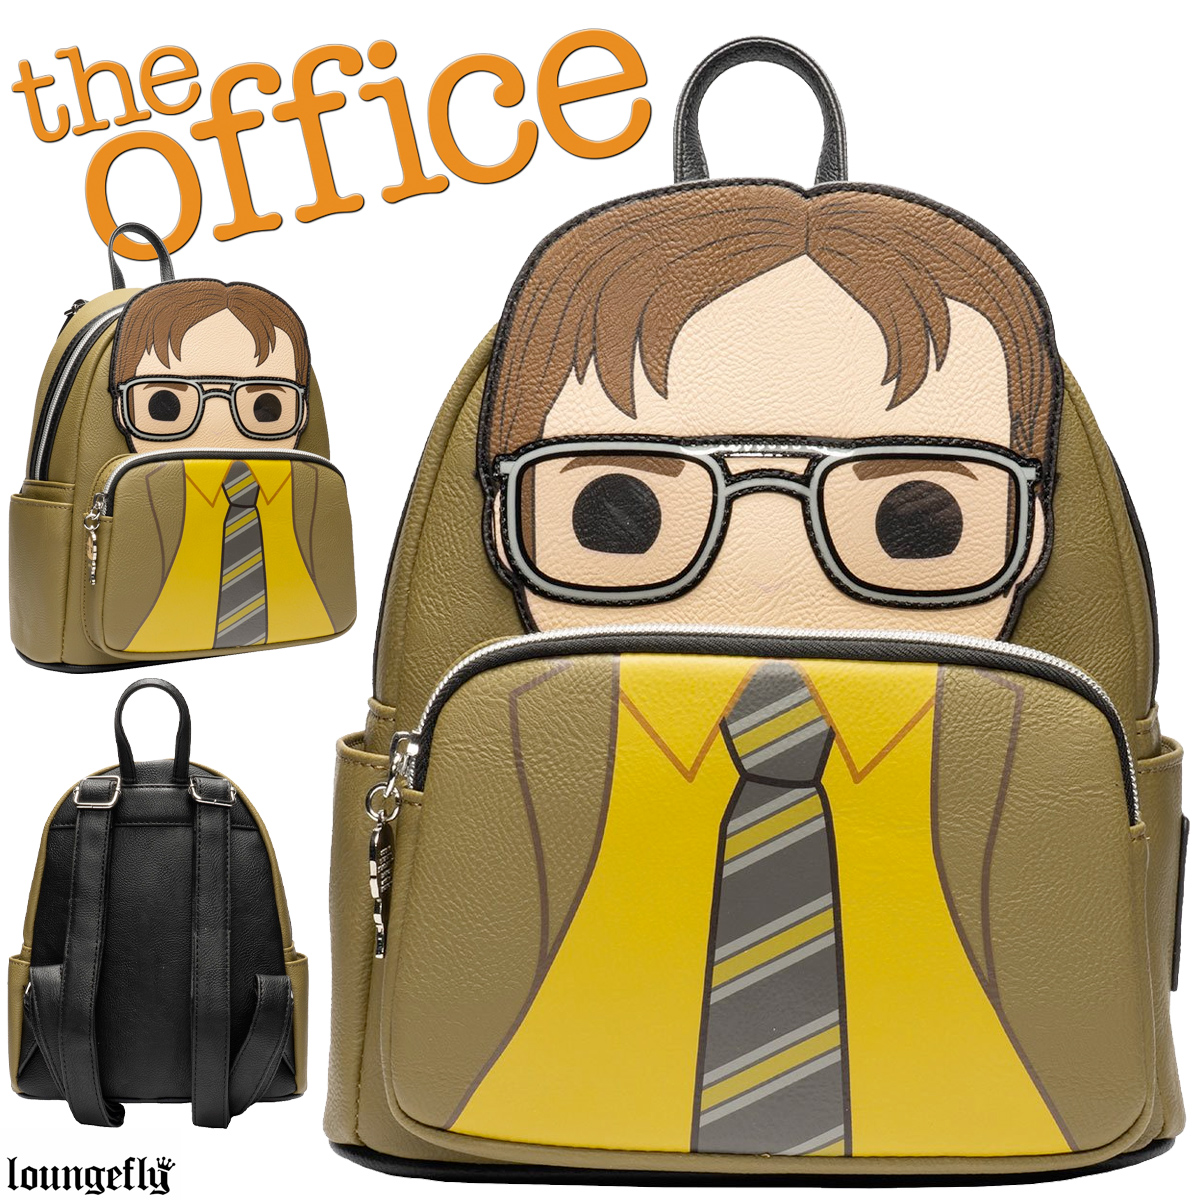 Mini-Mochila Dwight Schrute da Série The Office